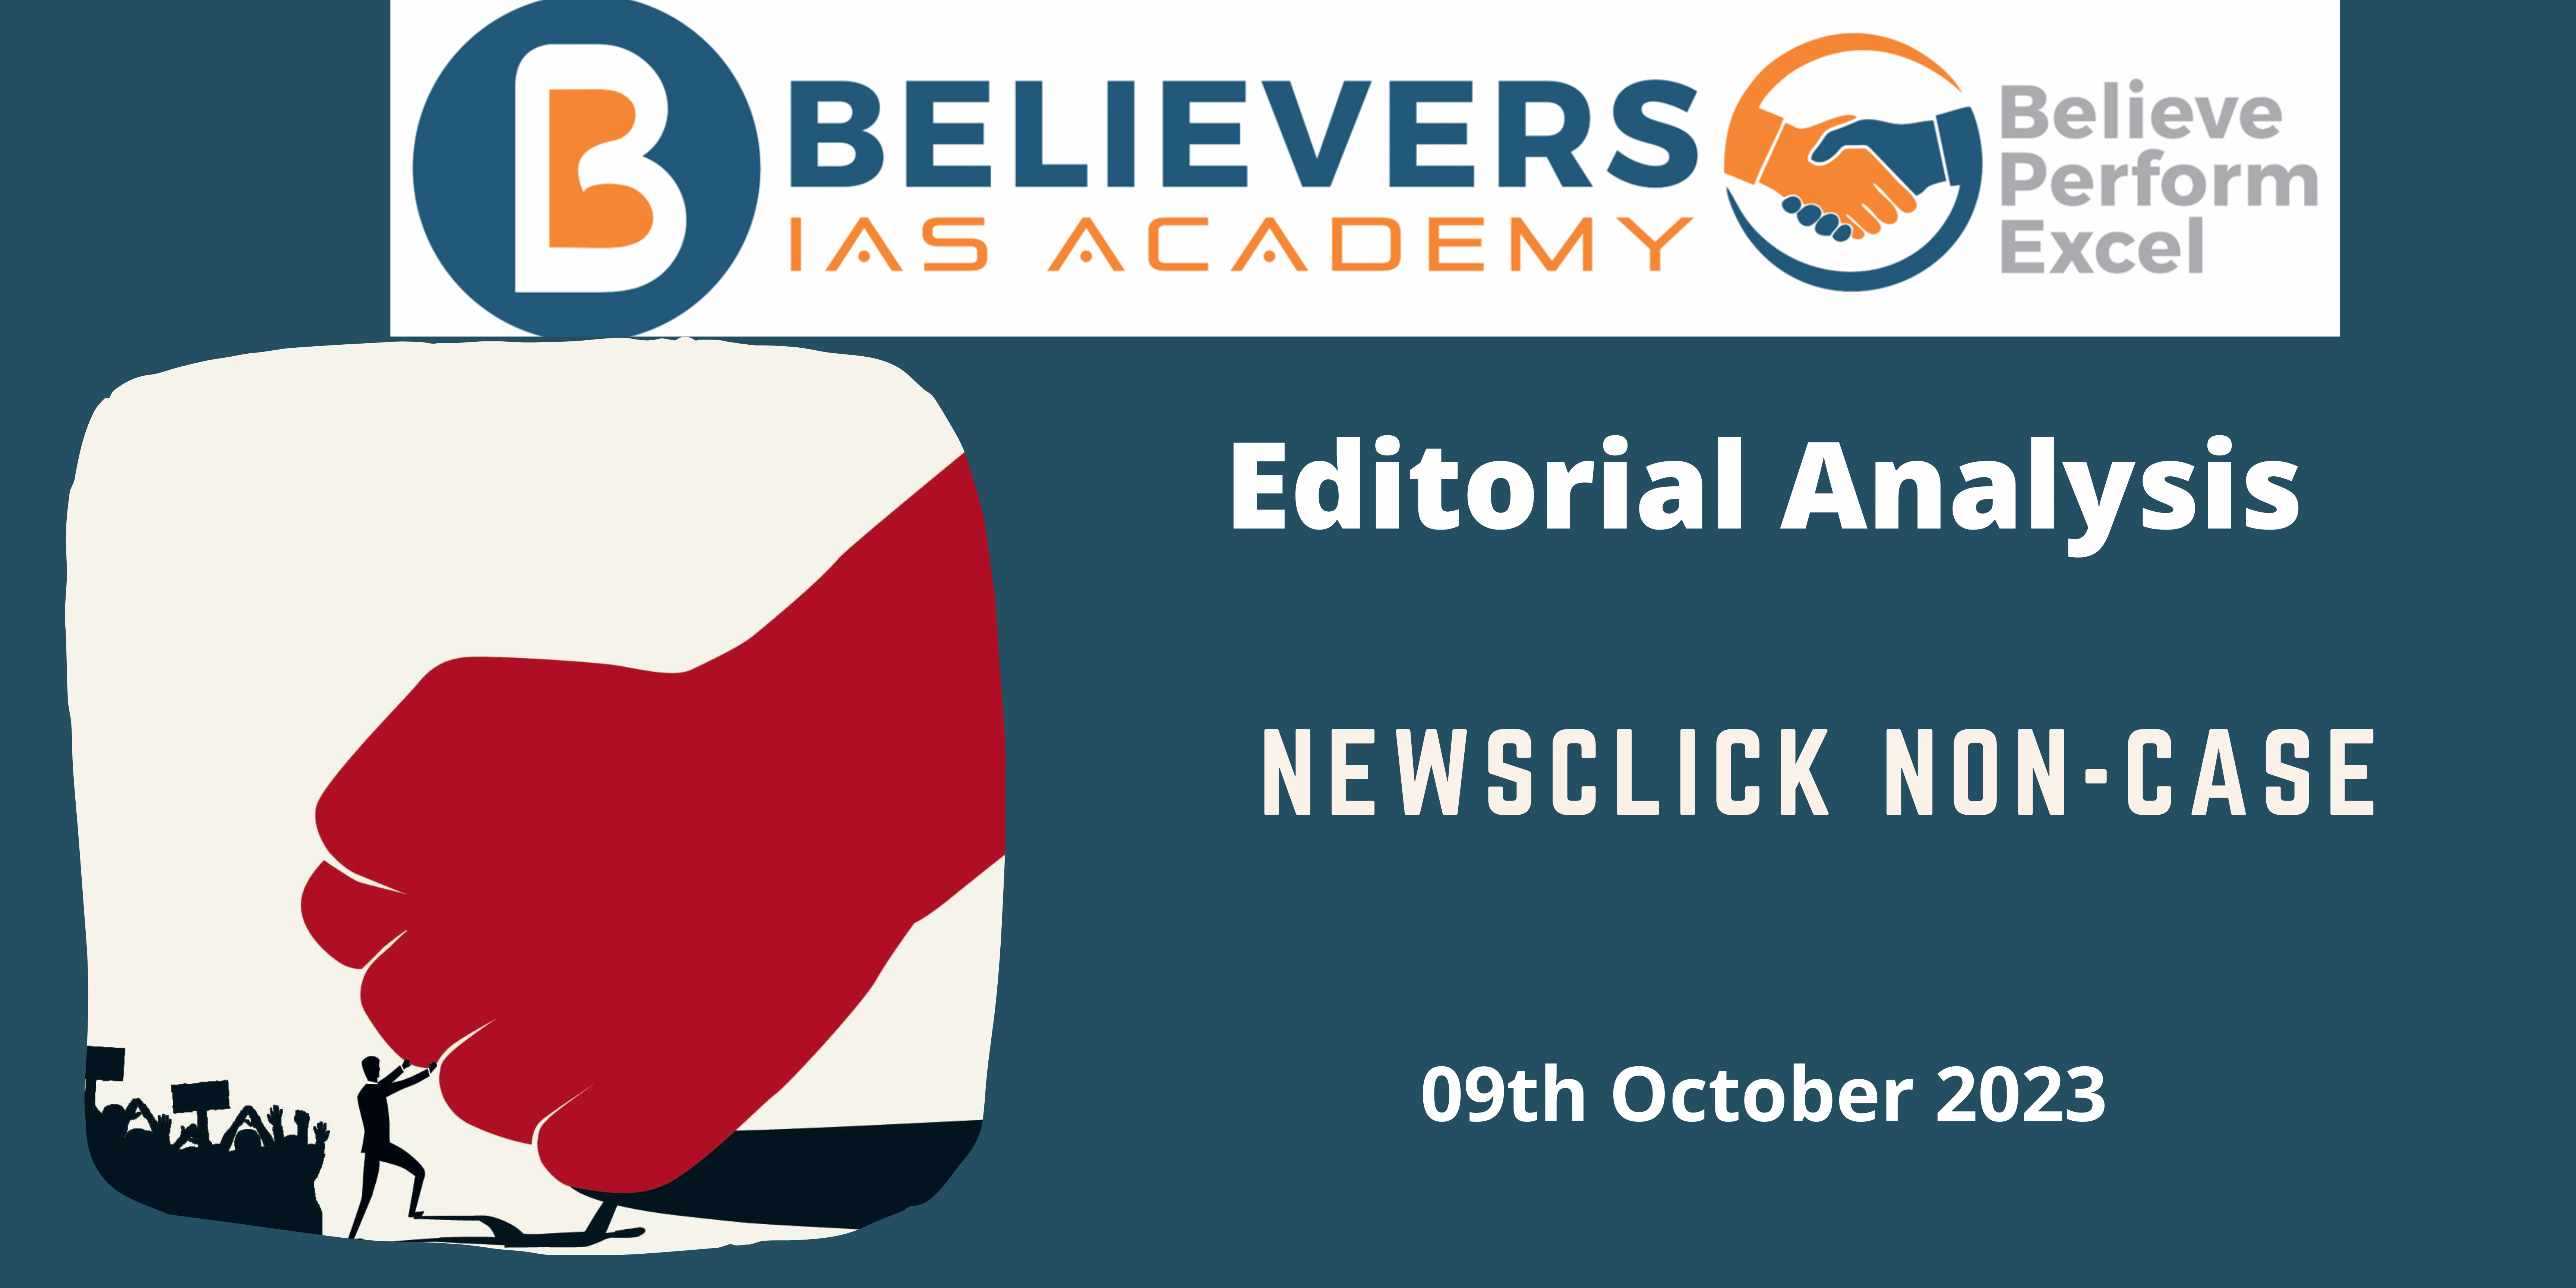 NewsClick non-case